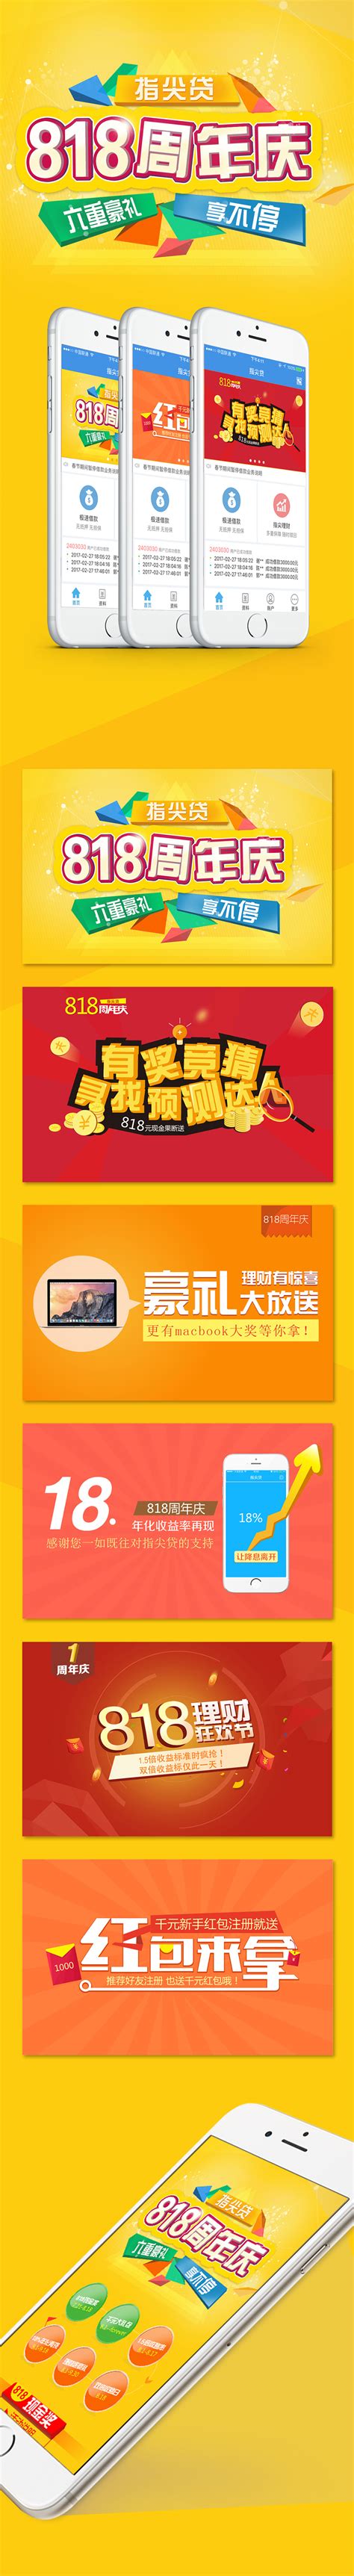 企业网站banner广告条图片下载_红动中国